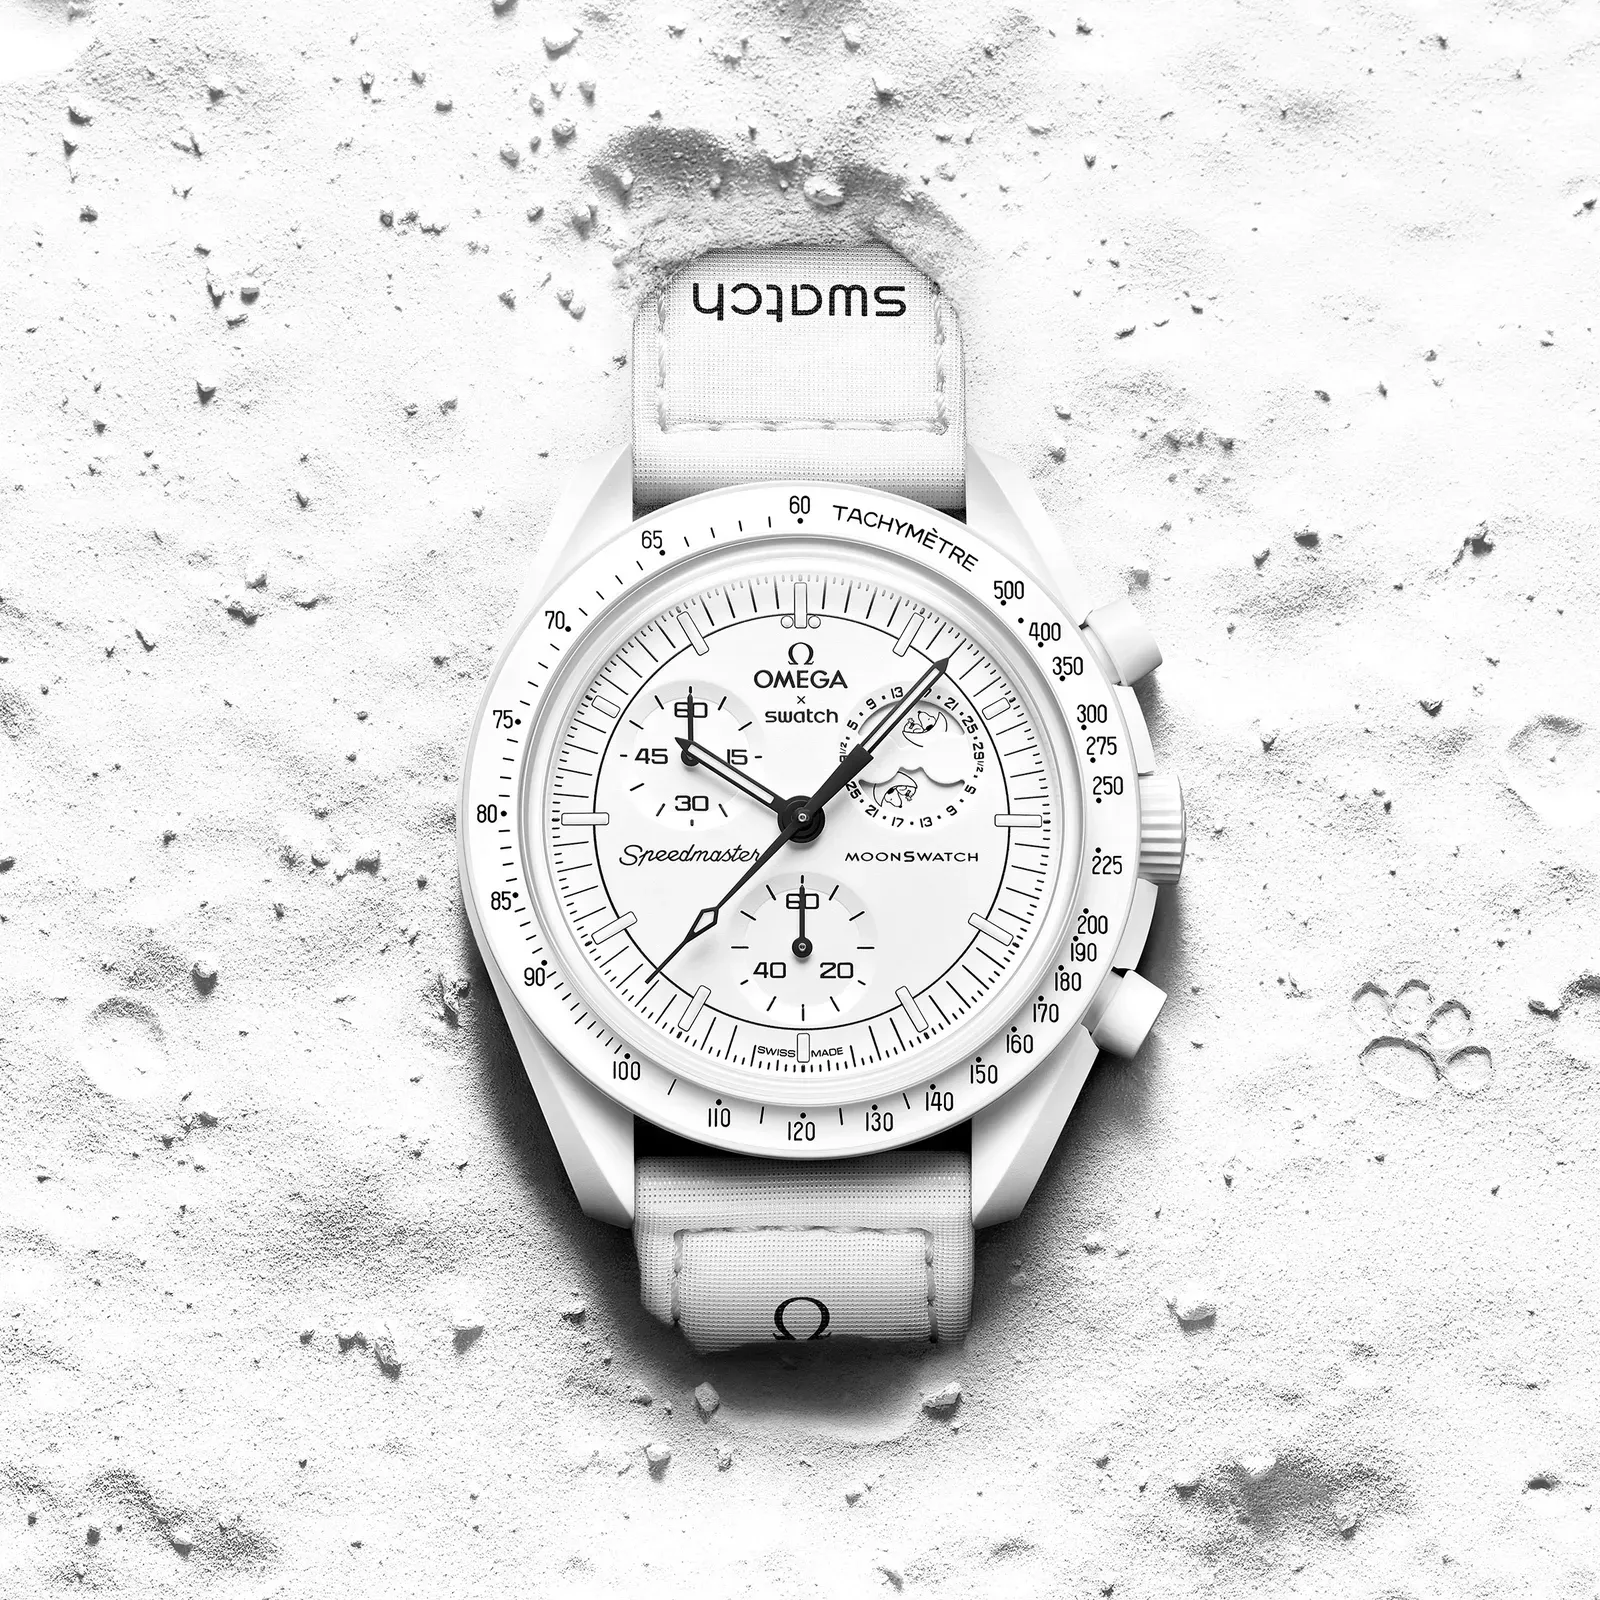 Precio y disponibilidad del reloj Omega x Swatch MoonSwatch de Snoopy